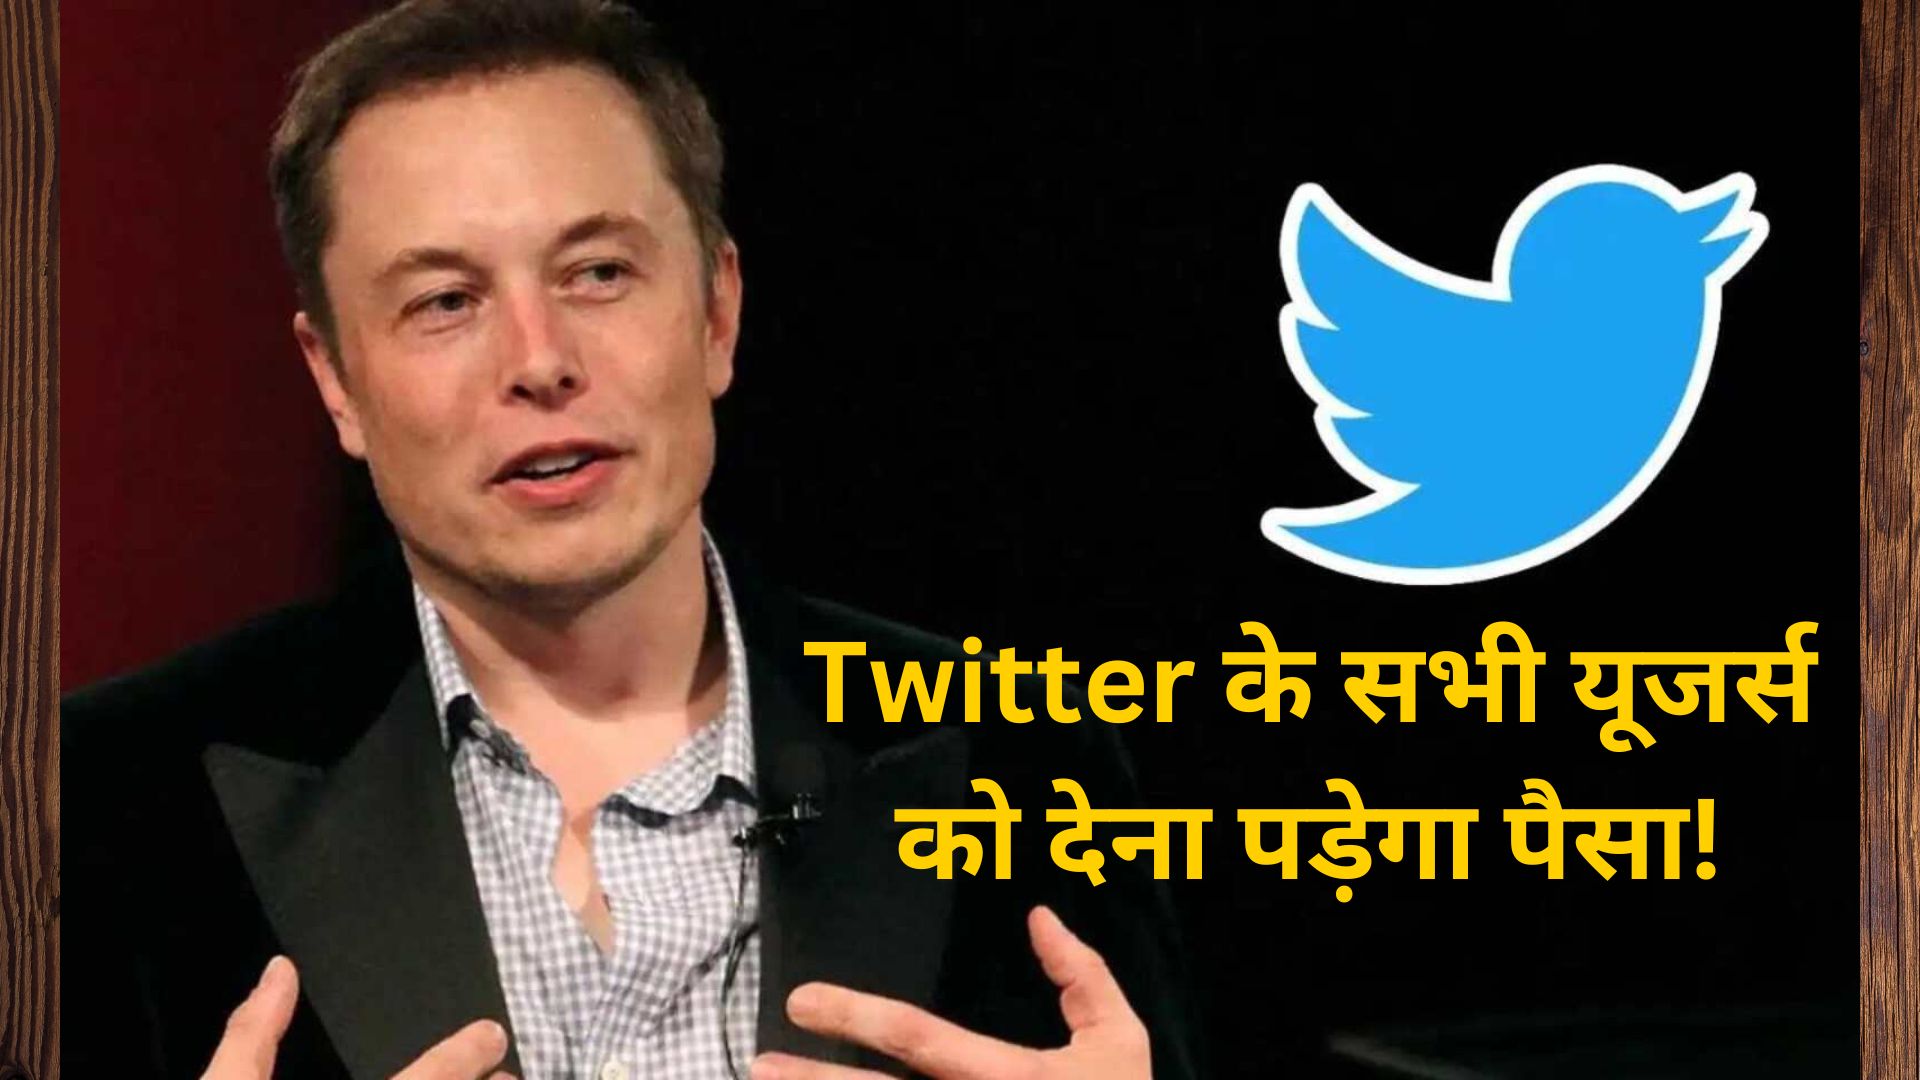 एक और झटके की तैयारी: Twitter के सभी यूजर्स को देना पड़ेगा पैसा! जानिए क्या है Musk Plan?